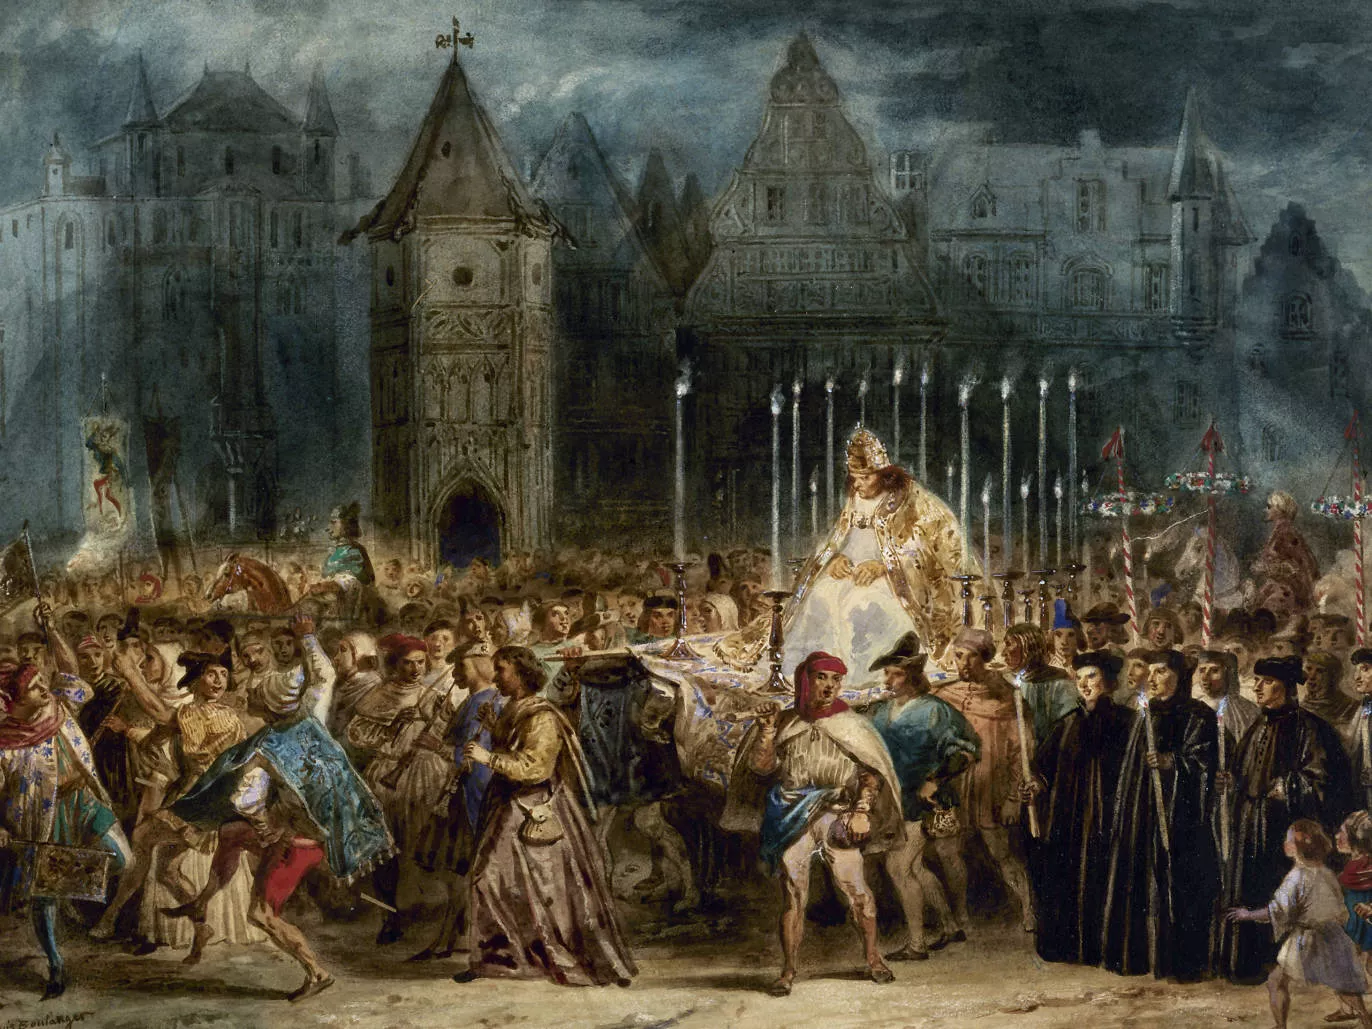 En diverses festes d'herència romana s'entronitzava un minusvàlid i se'l treia en processó perquè la gent l'escarnís, com passa en aquesta escena de Notre-Dame de París de Victor Hugo